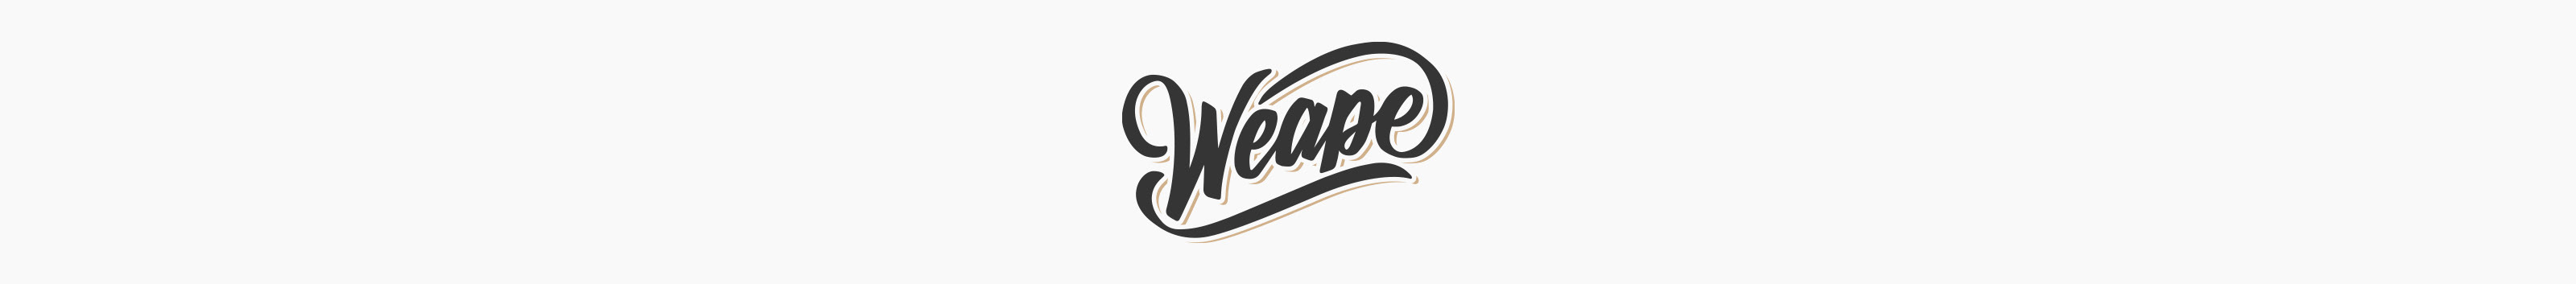 Weape Studio's profile banner